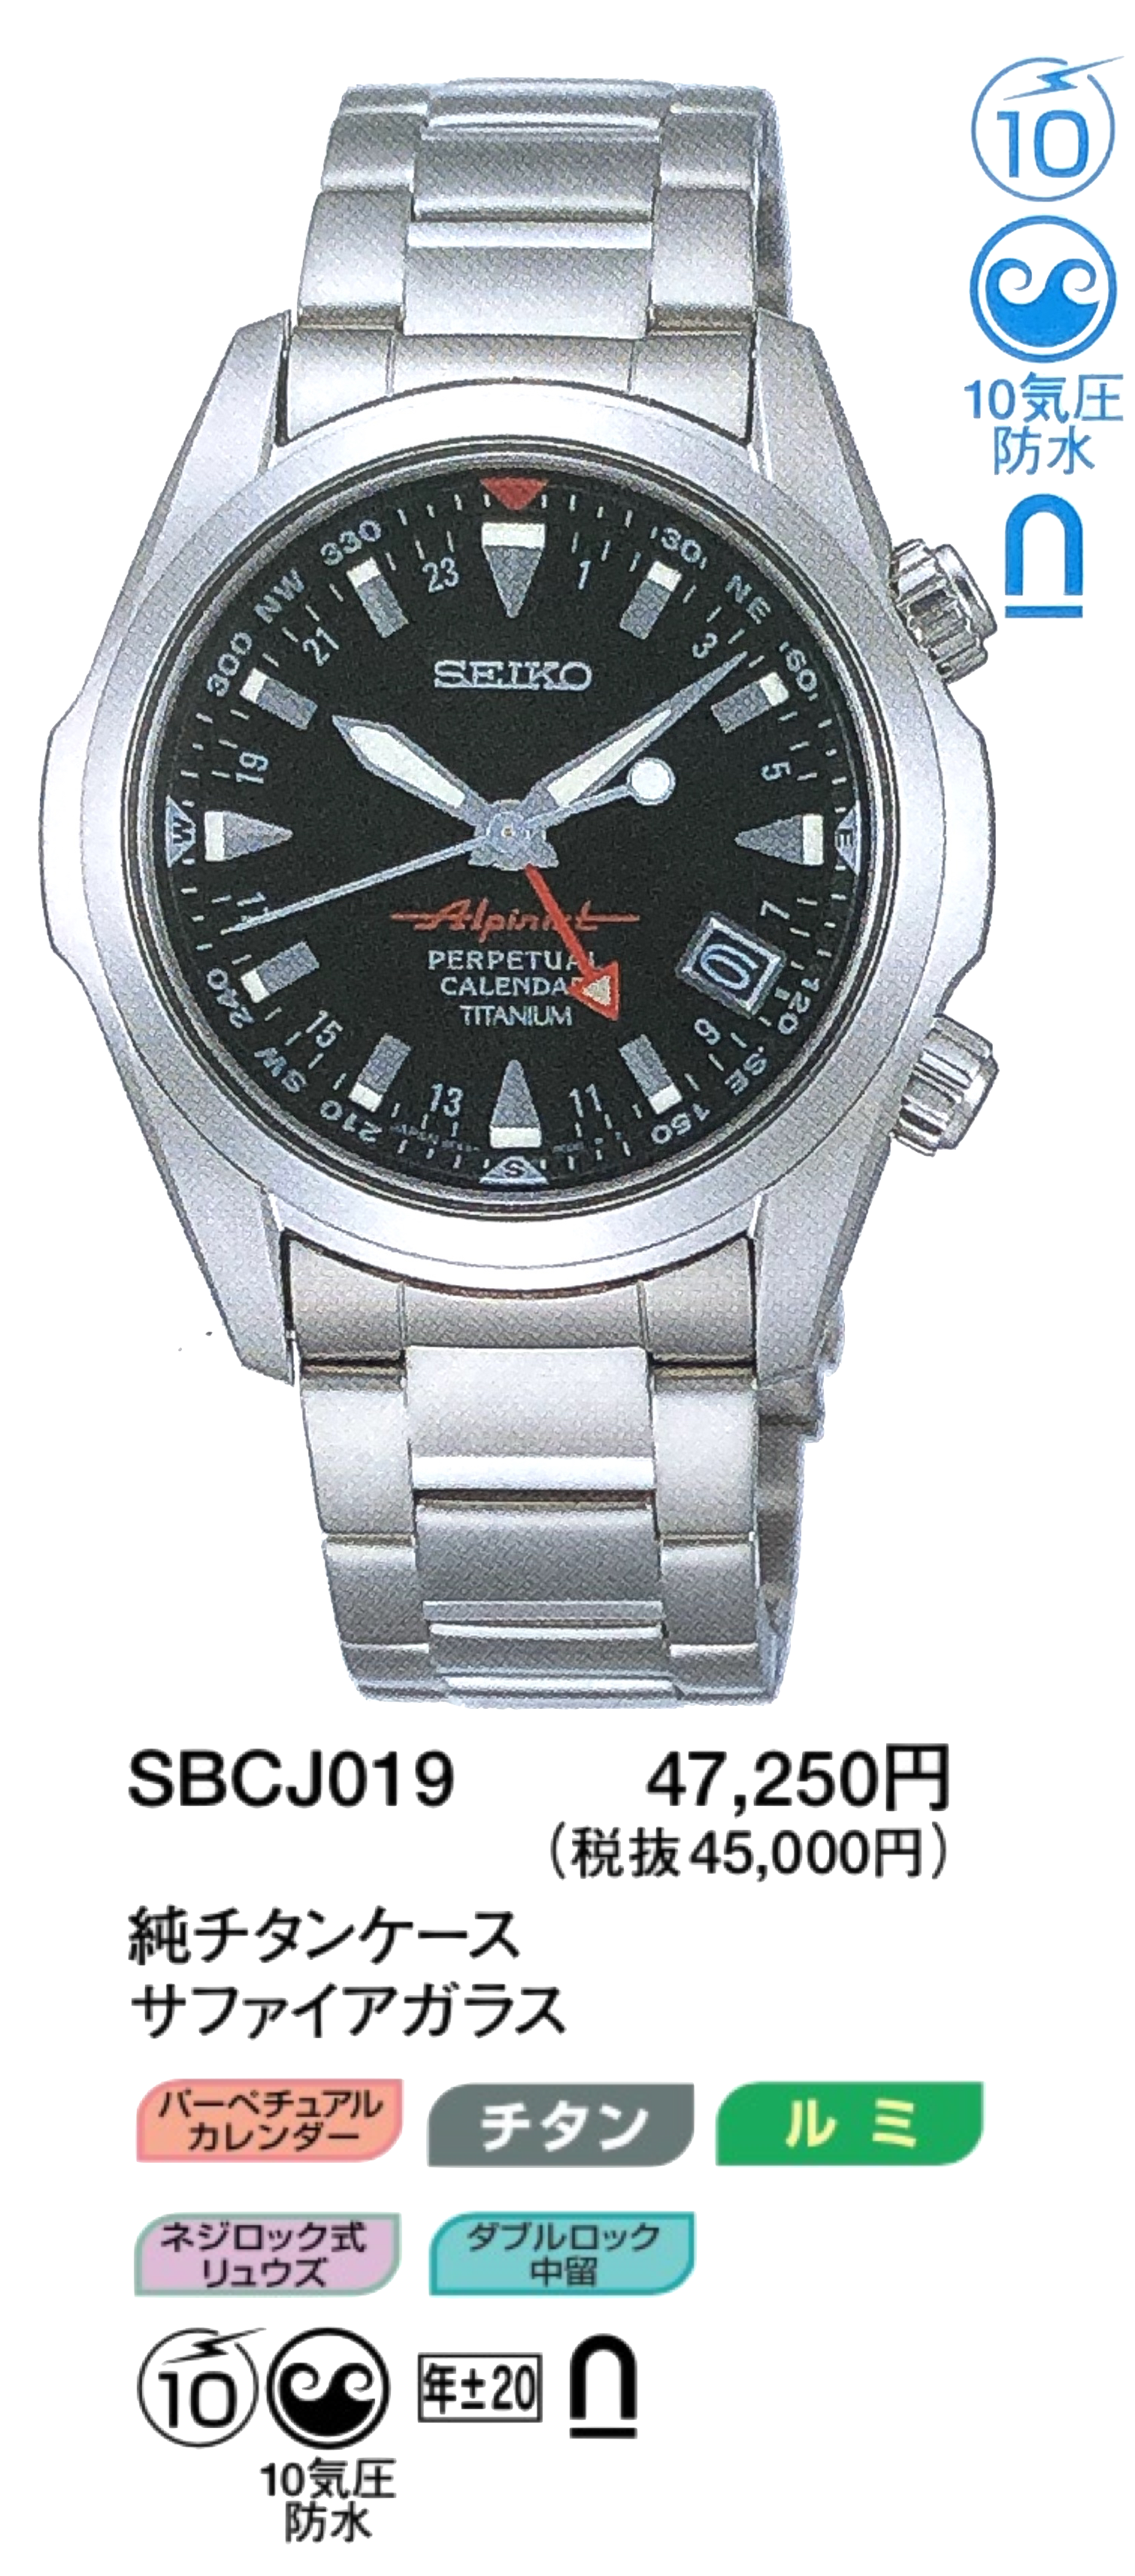 Seiko Alpinist 8F56-00D0 SBCJ019 (Sold)